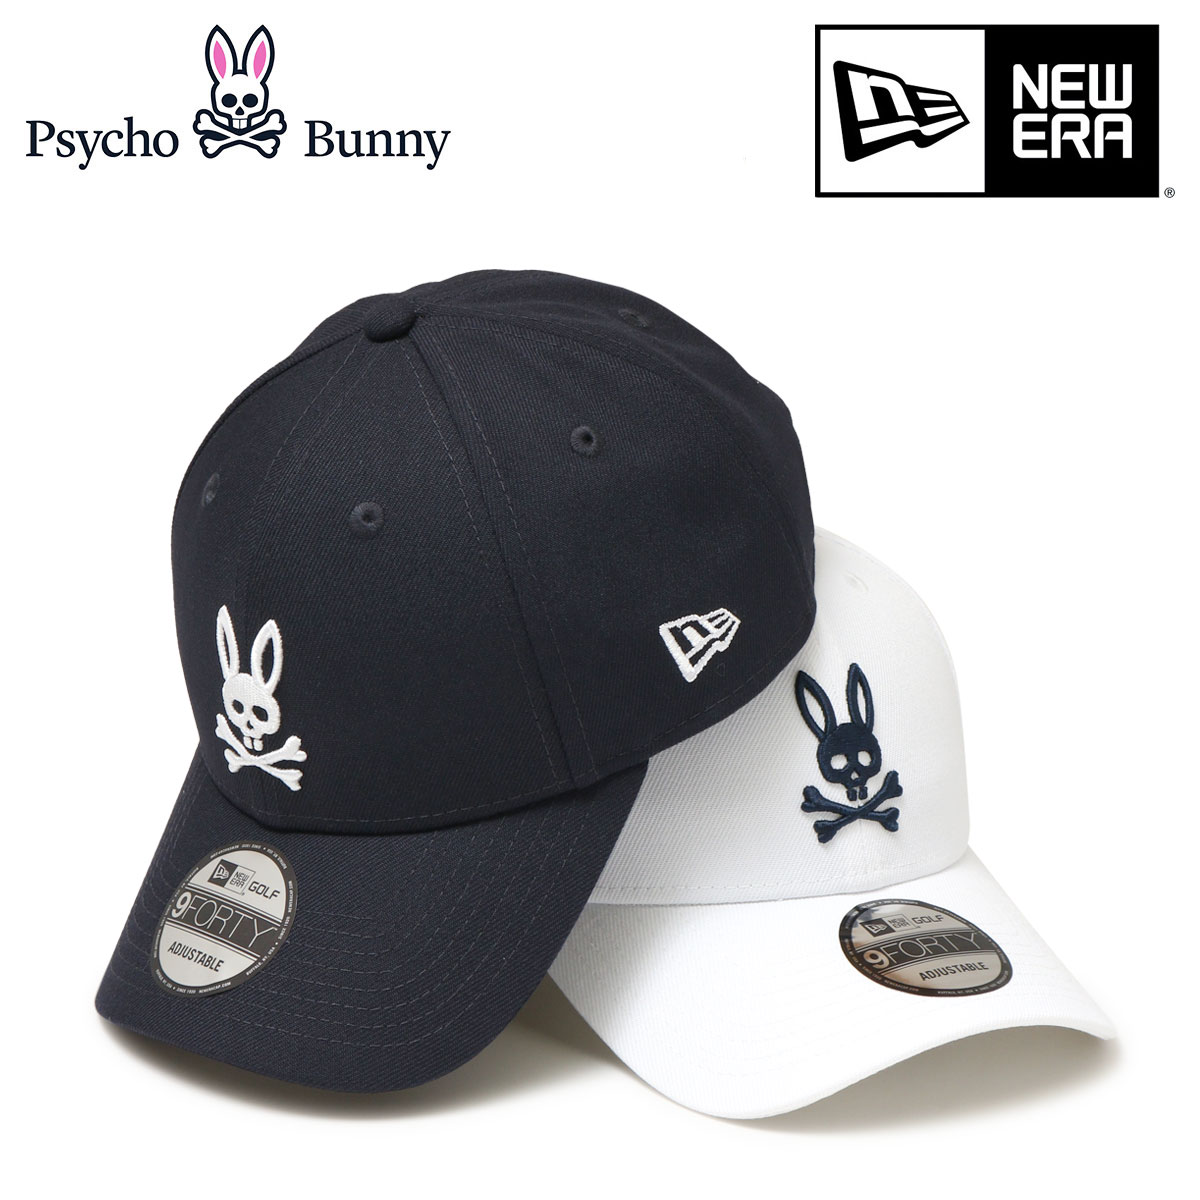 ニューエラ 帽子（メンズ） サイコバニー ゴルフ キャップ ニューエラ コラボ 帽子 メンズ レディース PBMG353F Psycho Bunny NEW ERA アウトドア 刺繍 抗菌 9FORTY サイズ調整可能[即日発送]